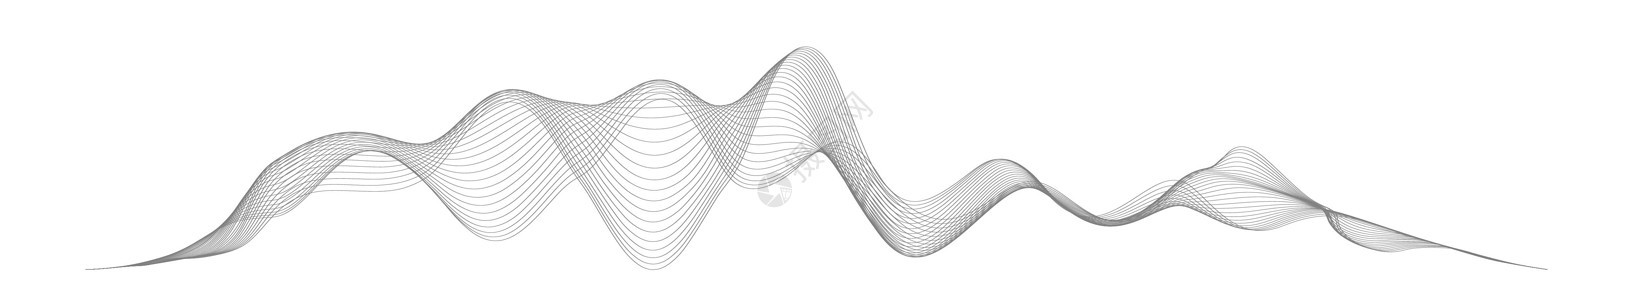 在白色背景上的抽象风格的声波 抽象数字信号波线 矢量音乐语音振动歌曲波形数字频谱音频脉冲和波形频率均衡器收音机标识波浪状韵律配乐背景图片